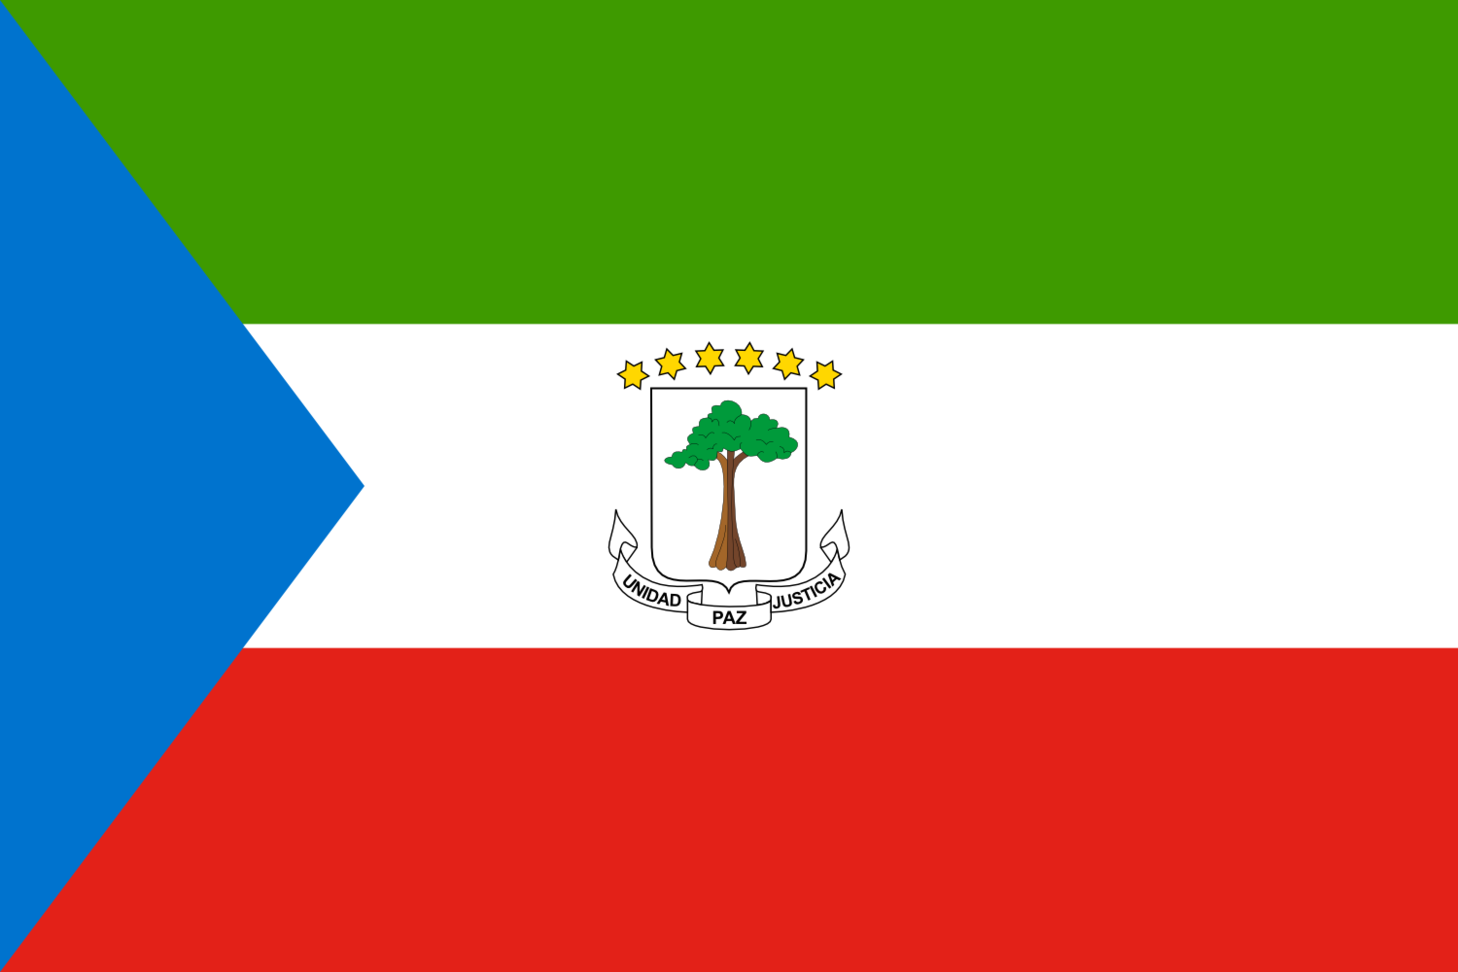 赤道幾內亞國旗